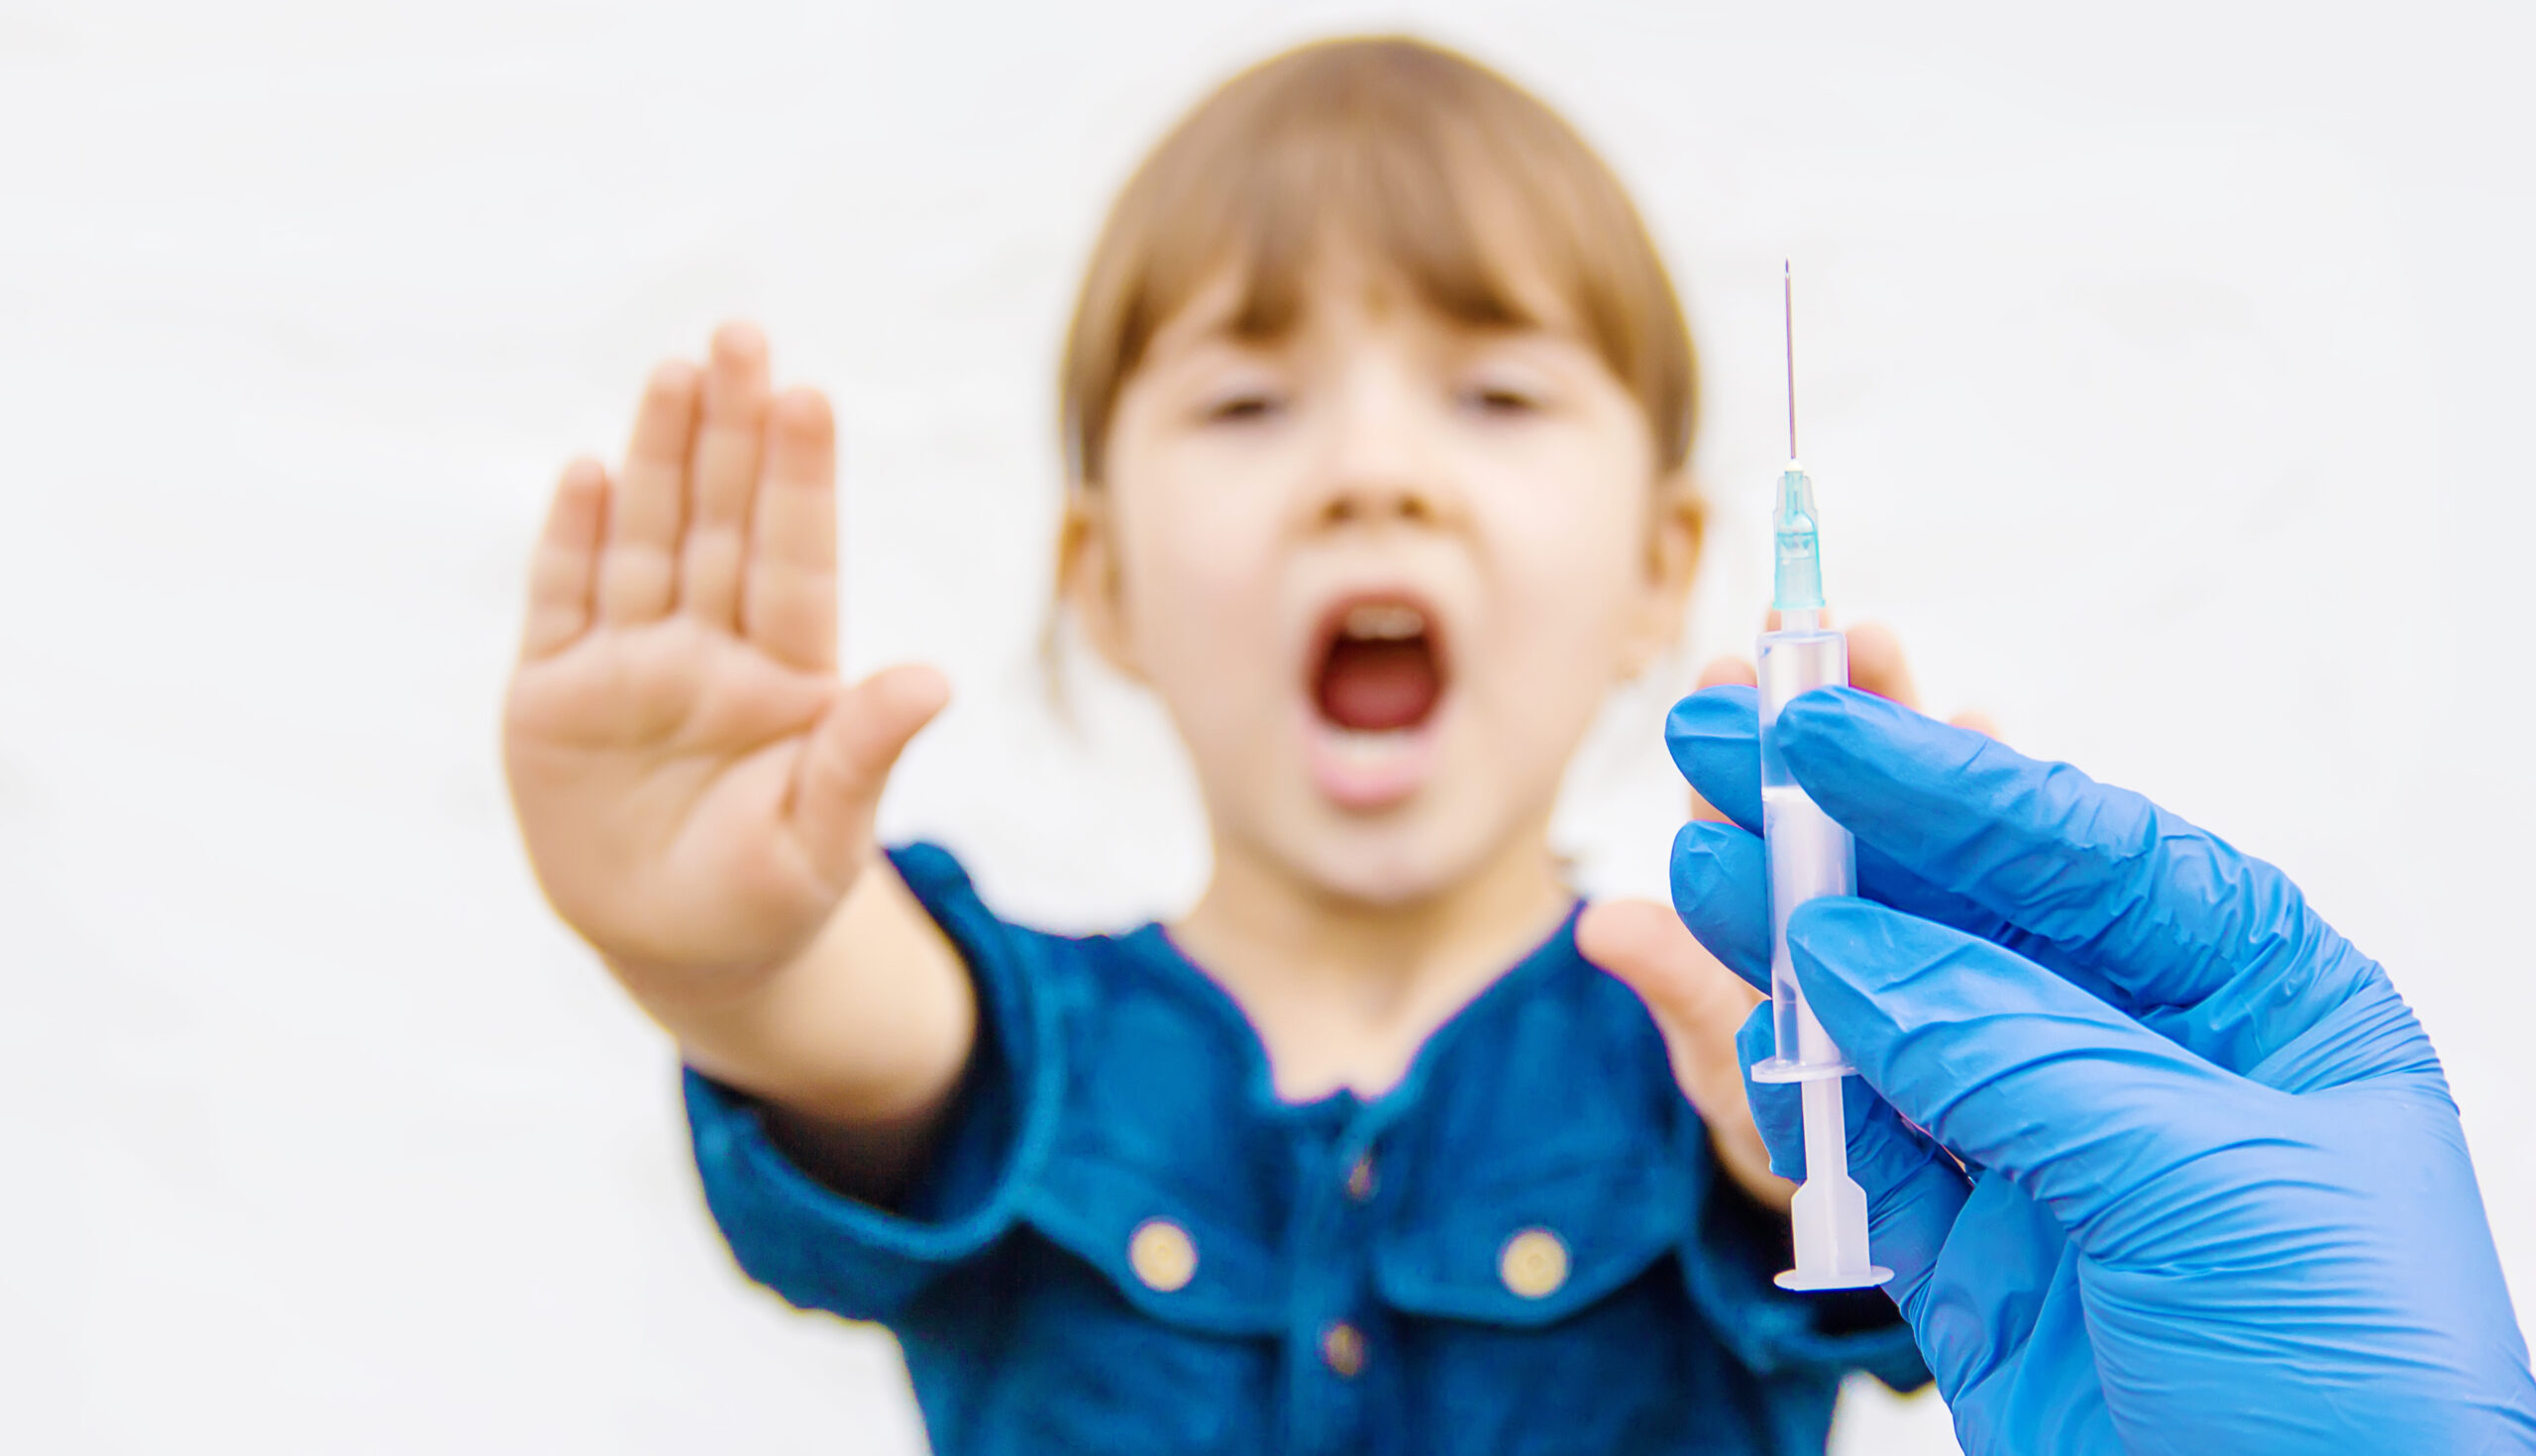 5-12 åringer deltar i mRNA-vaksineeksperiment ved norske sykehus